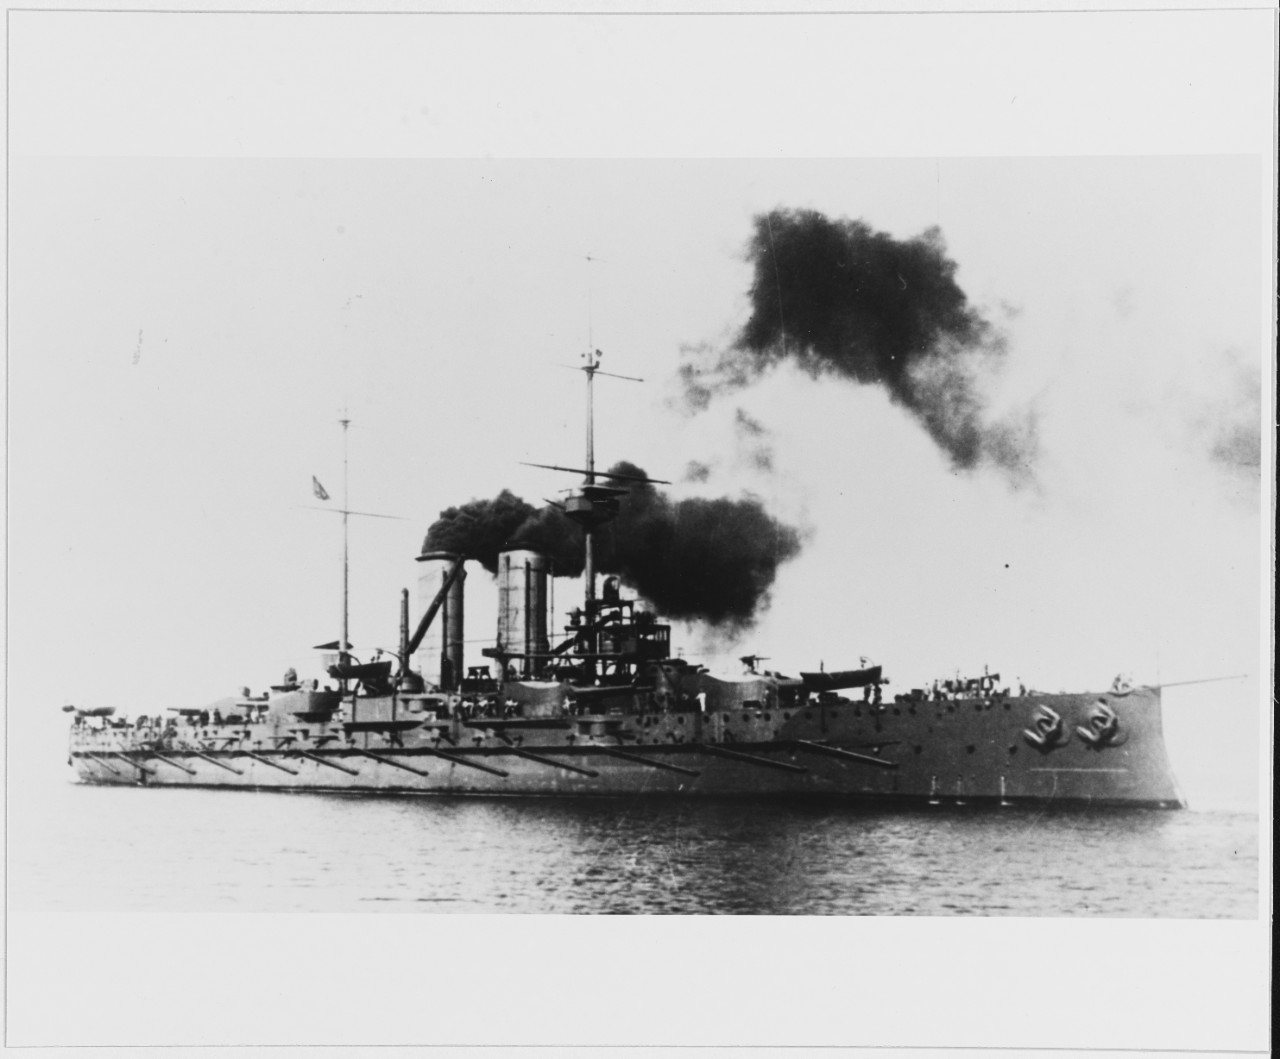 ZRINYI (Austrian battleship, 1910-1920)